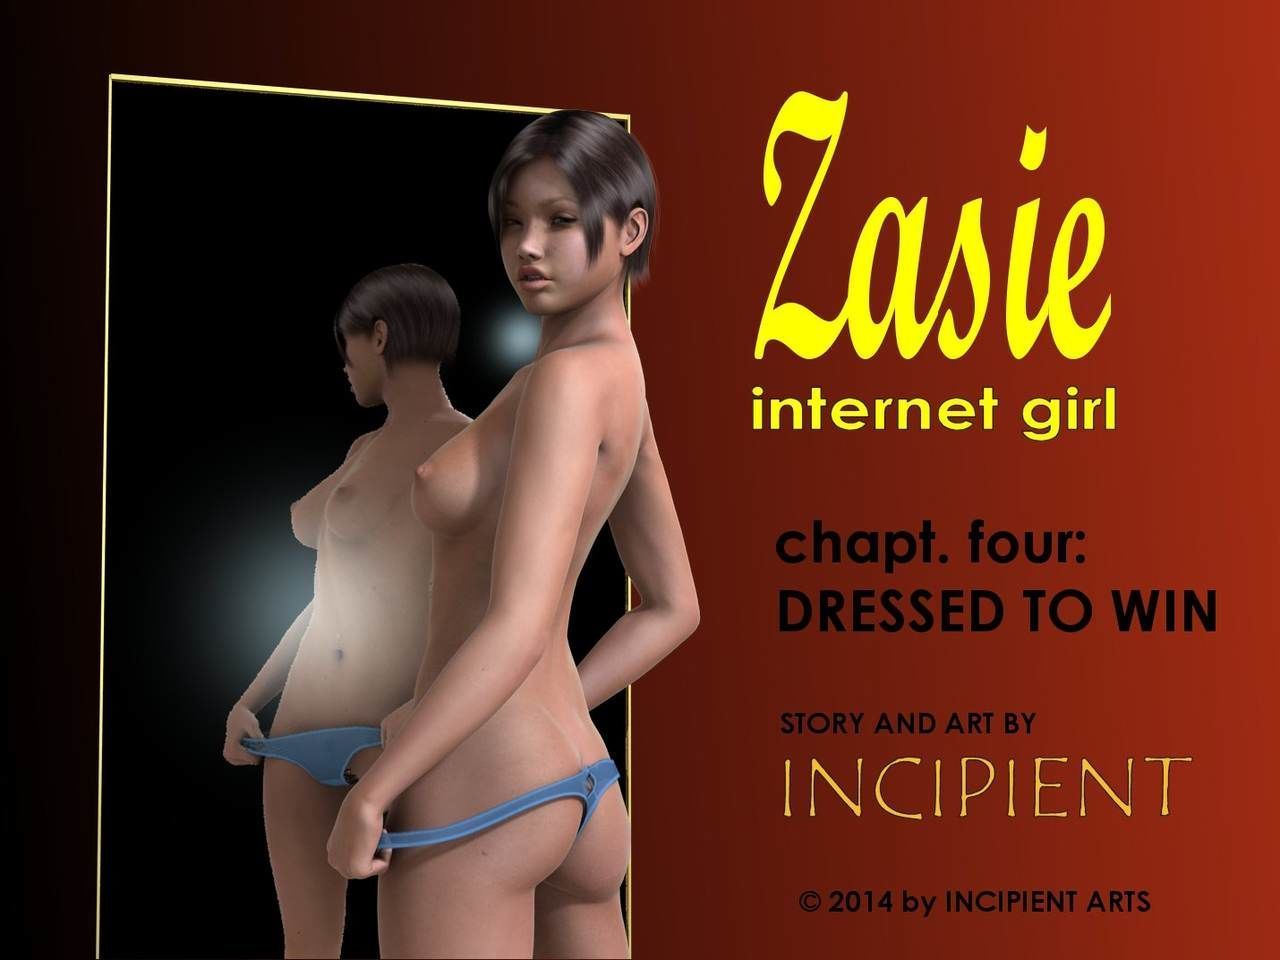 [incipient] zasie Internet Kız ch. 4: Giyinmiş için kazan